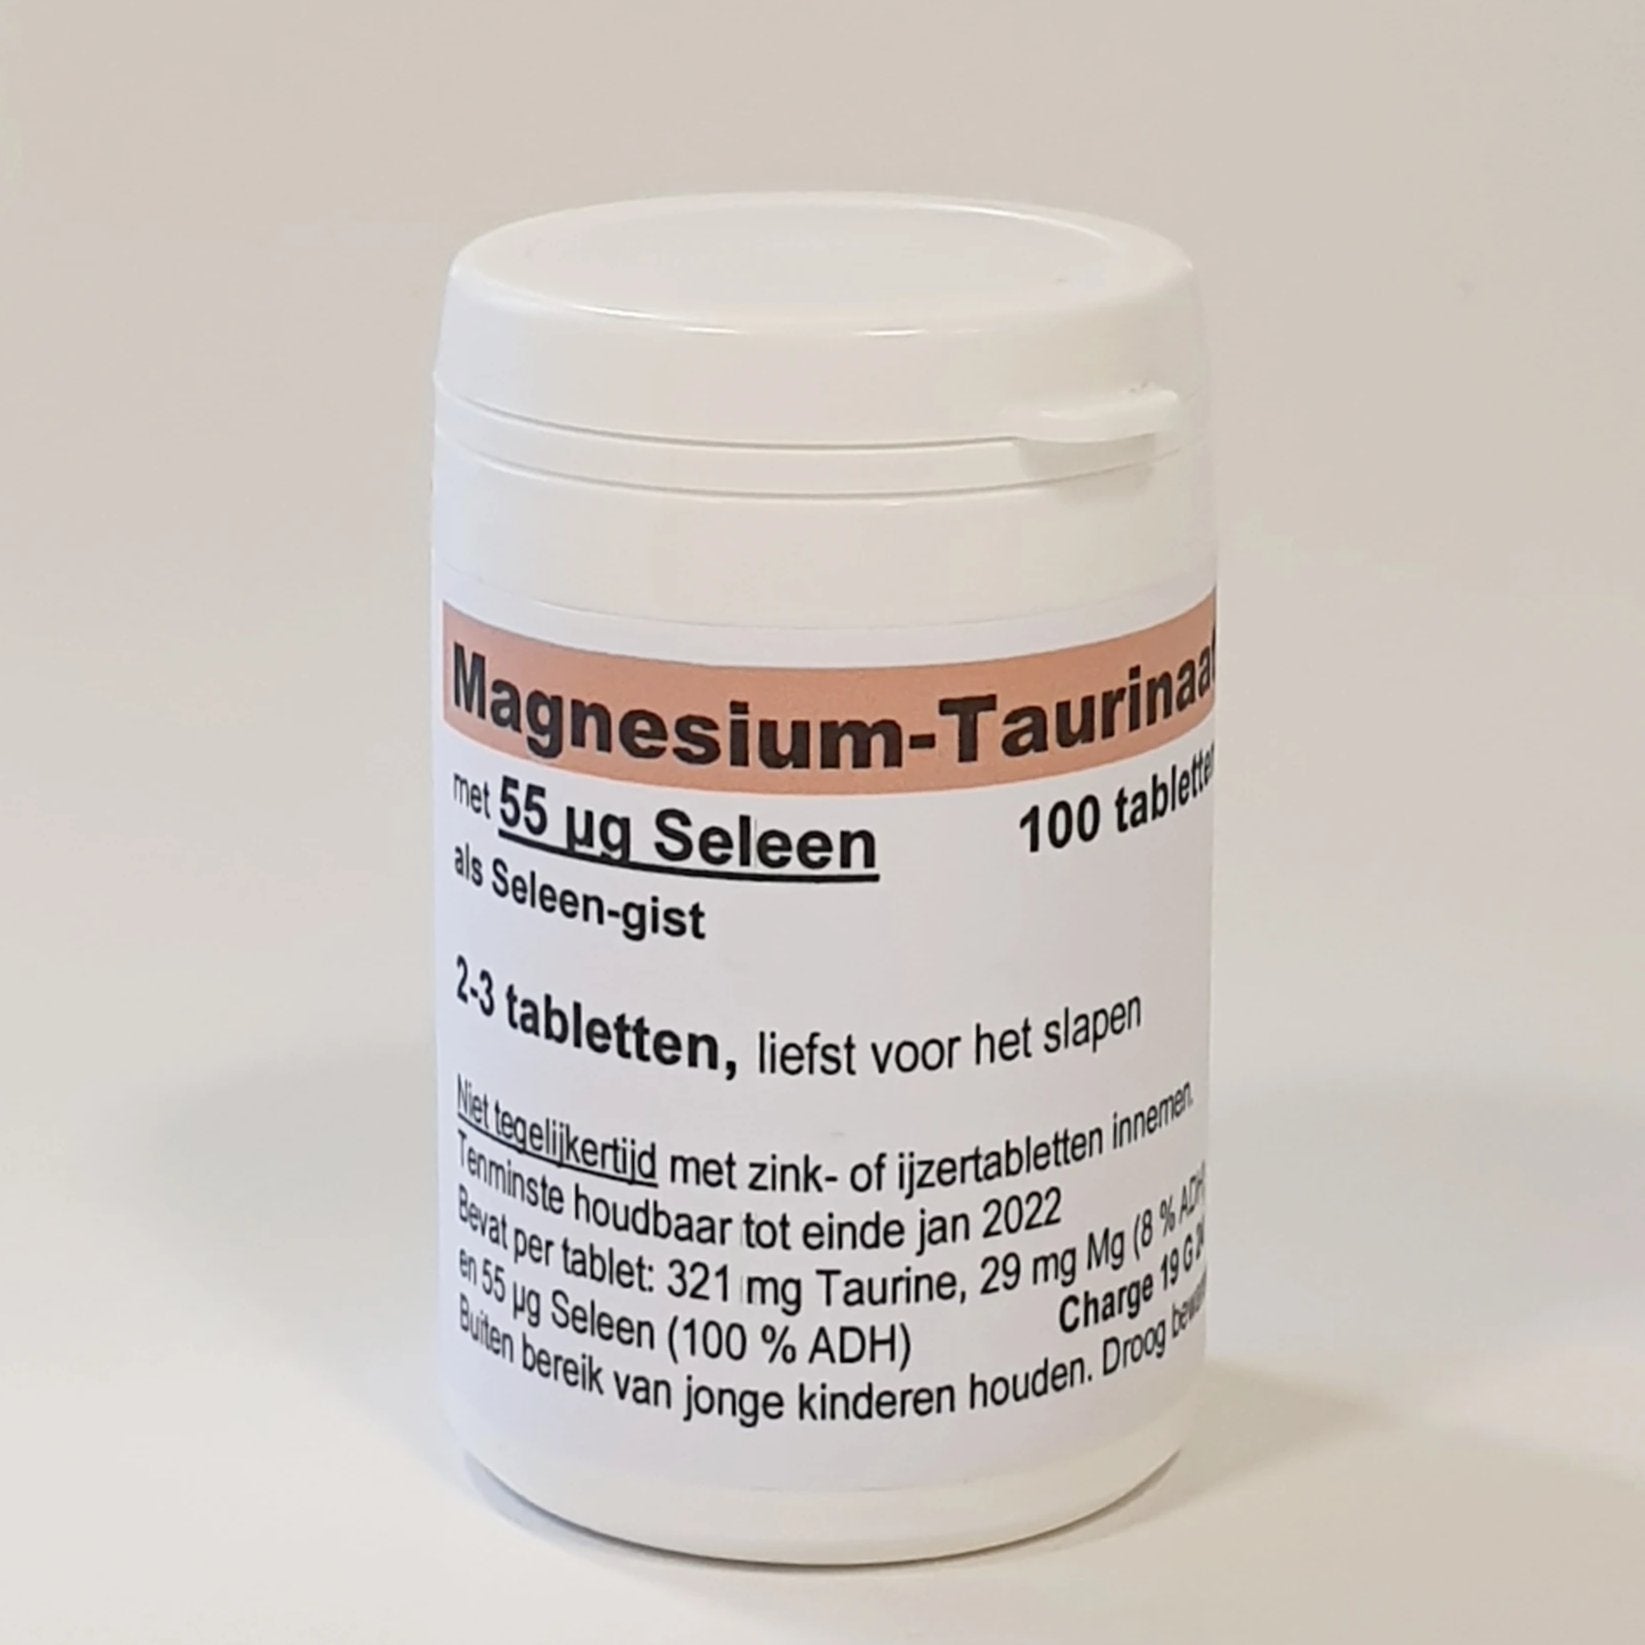 Magnesium - Taurinaat